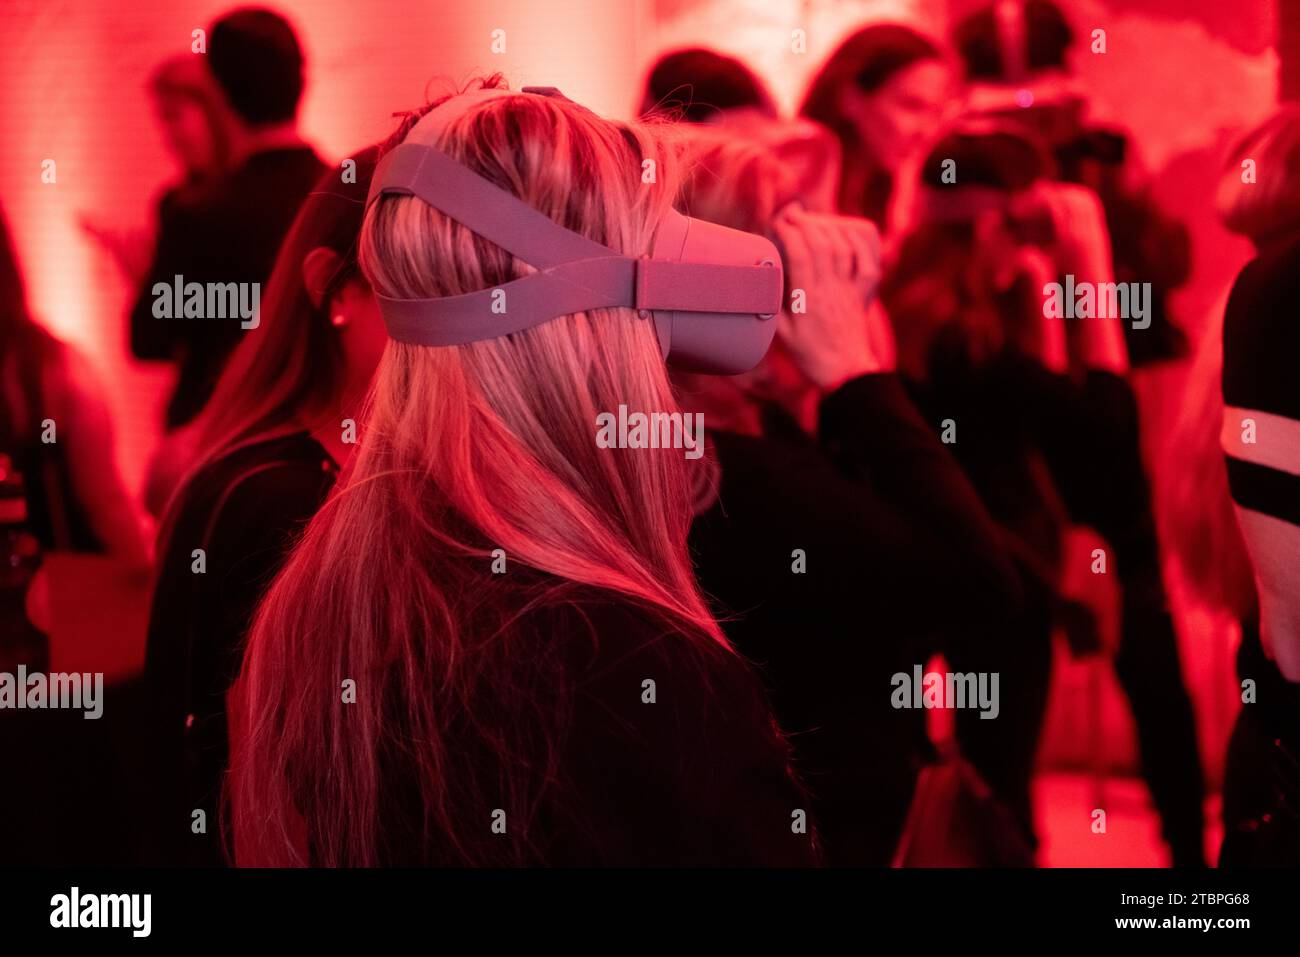 Sagomata in rosso splendore, una donna di profilo naviga in un regno virtuale, circondato da altri appassionati, in una sinfonia di esperienze condivise a Foto Stock